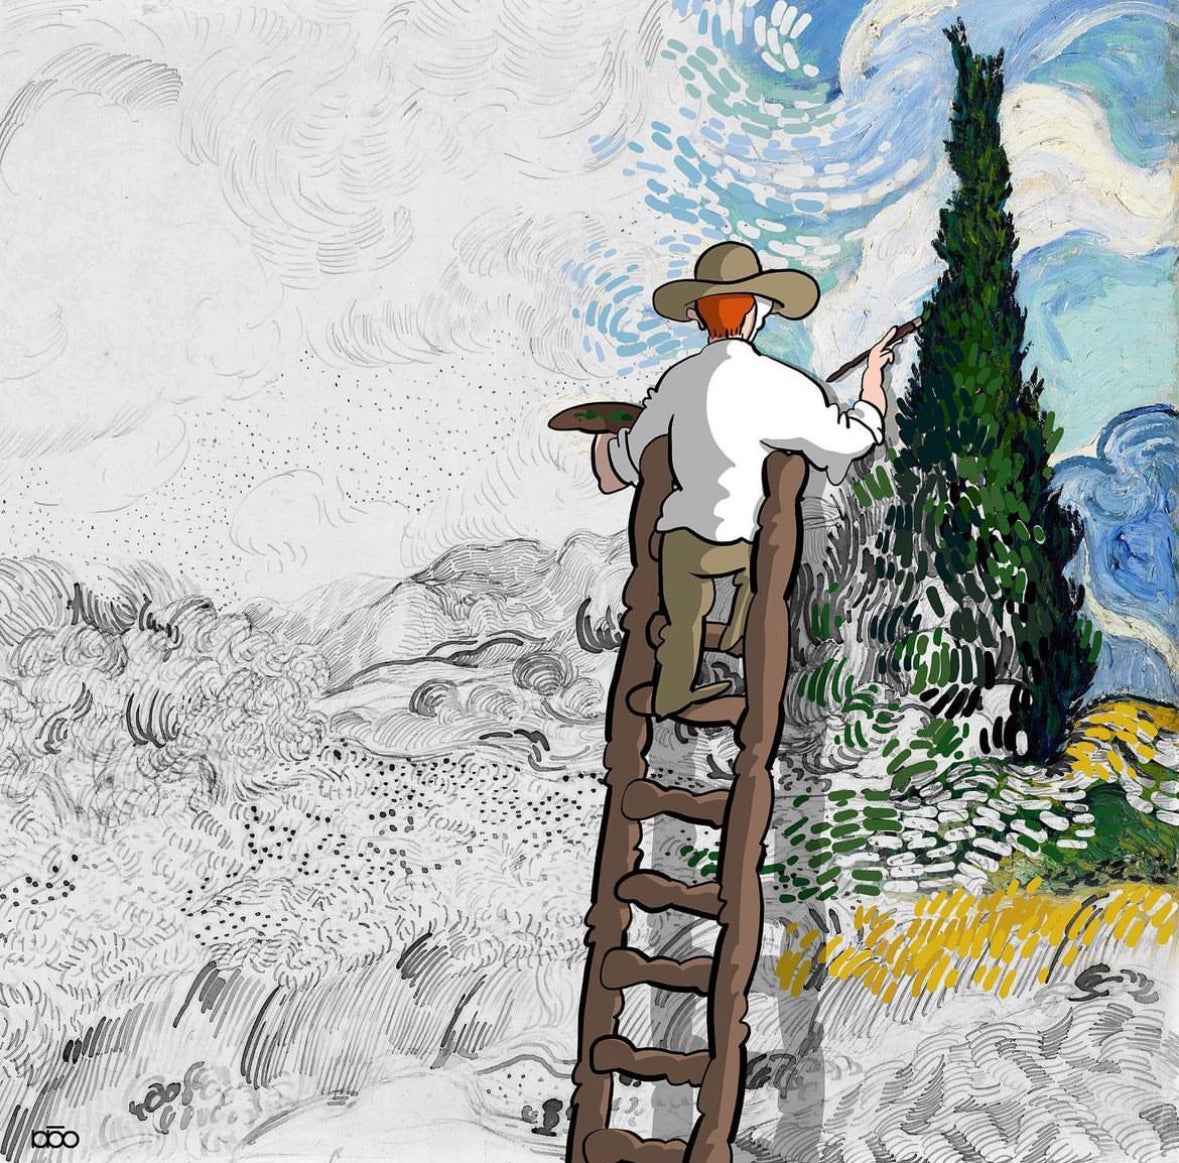 ภาพวาด การจำลองใช้ชีวิต ศิลปินแวนโก๊ะ Vincent Van Gogh